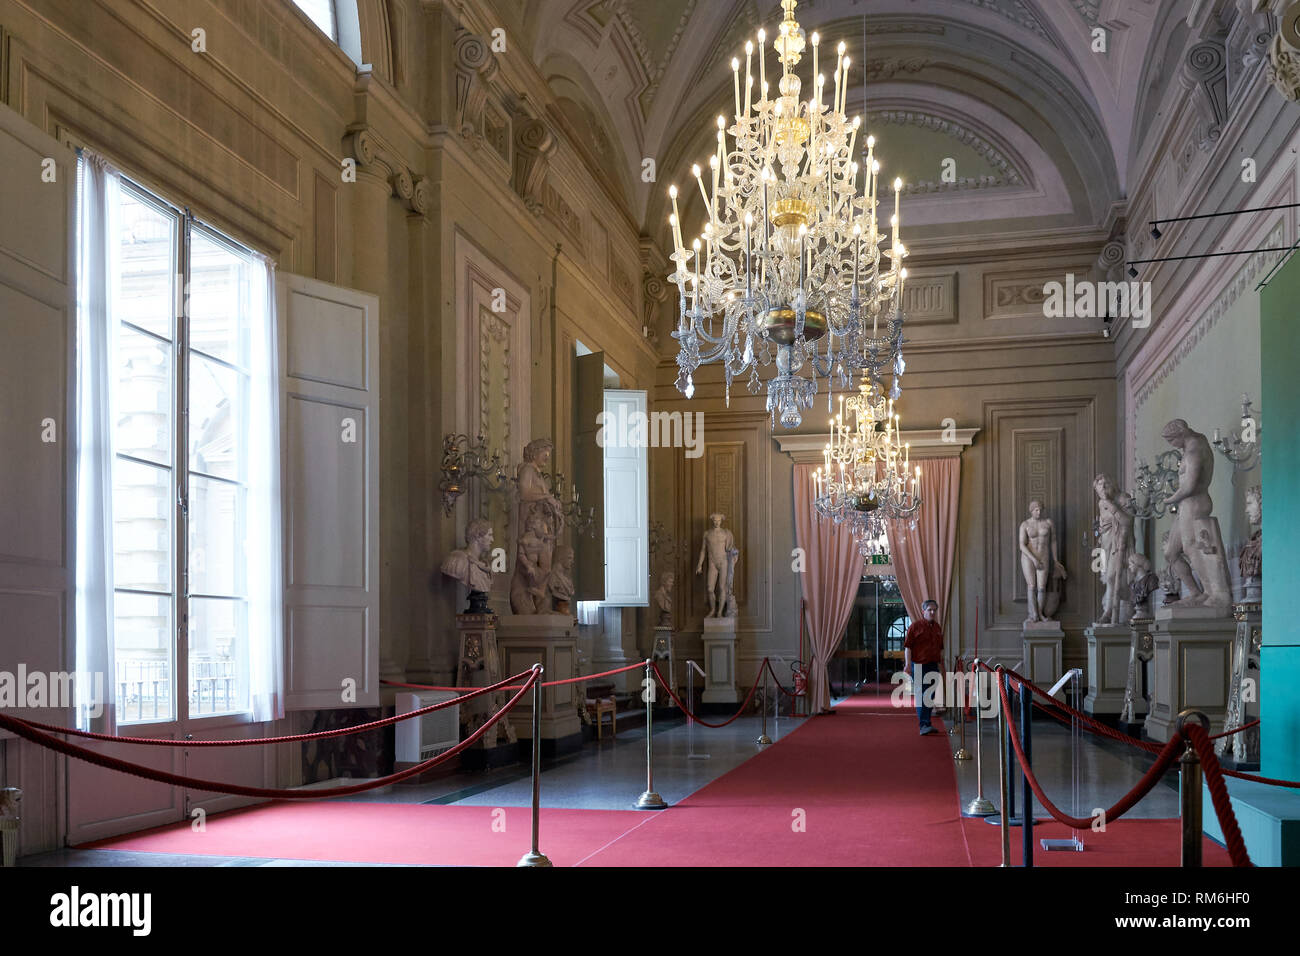 Der Innenraum im ersten Stock des Palazzo Pitti, die Häuser der Galerie Palatina und der königlichen und kaiserlichen Apartments. Stockfoto